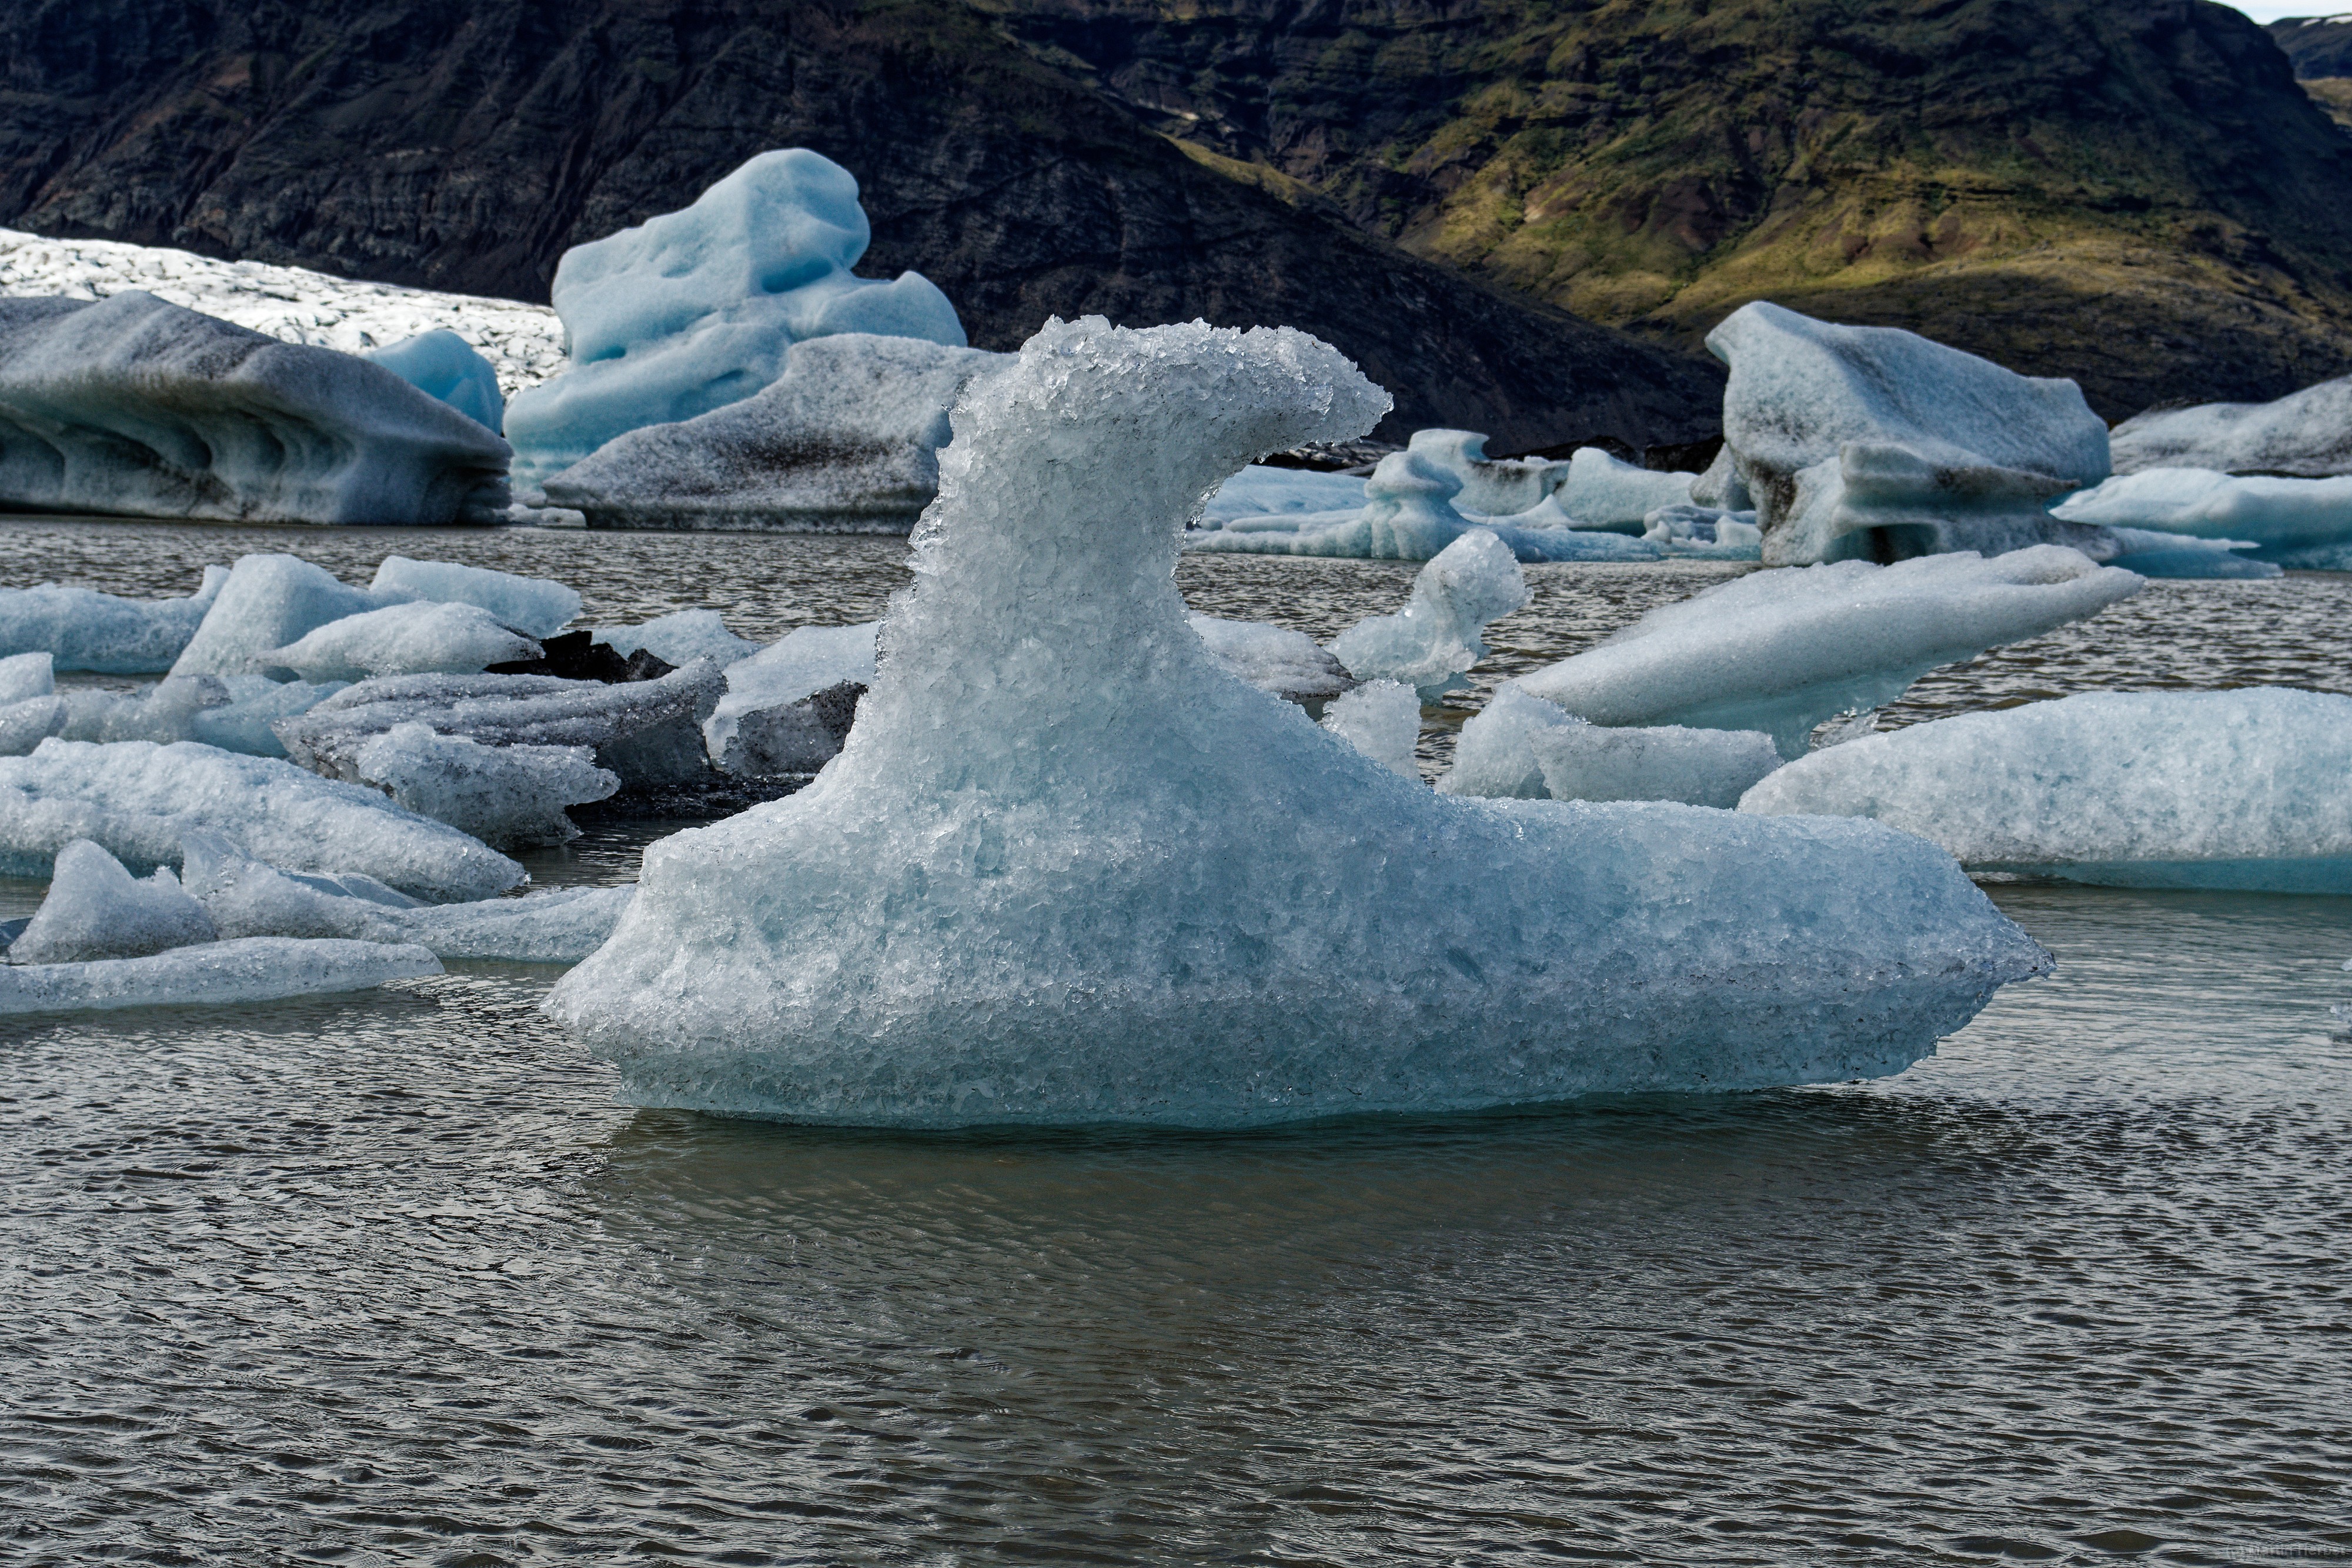 Gletschersee Fjallsarlon Der See wird von der Gletscherzunge Fjallsjökull gespeist und liegt unterhalb des Vatnajökull